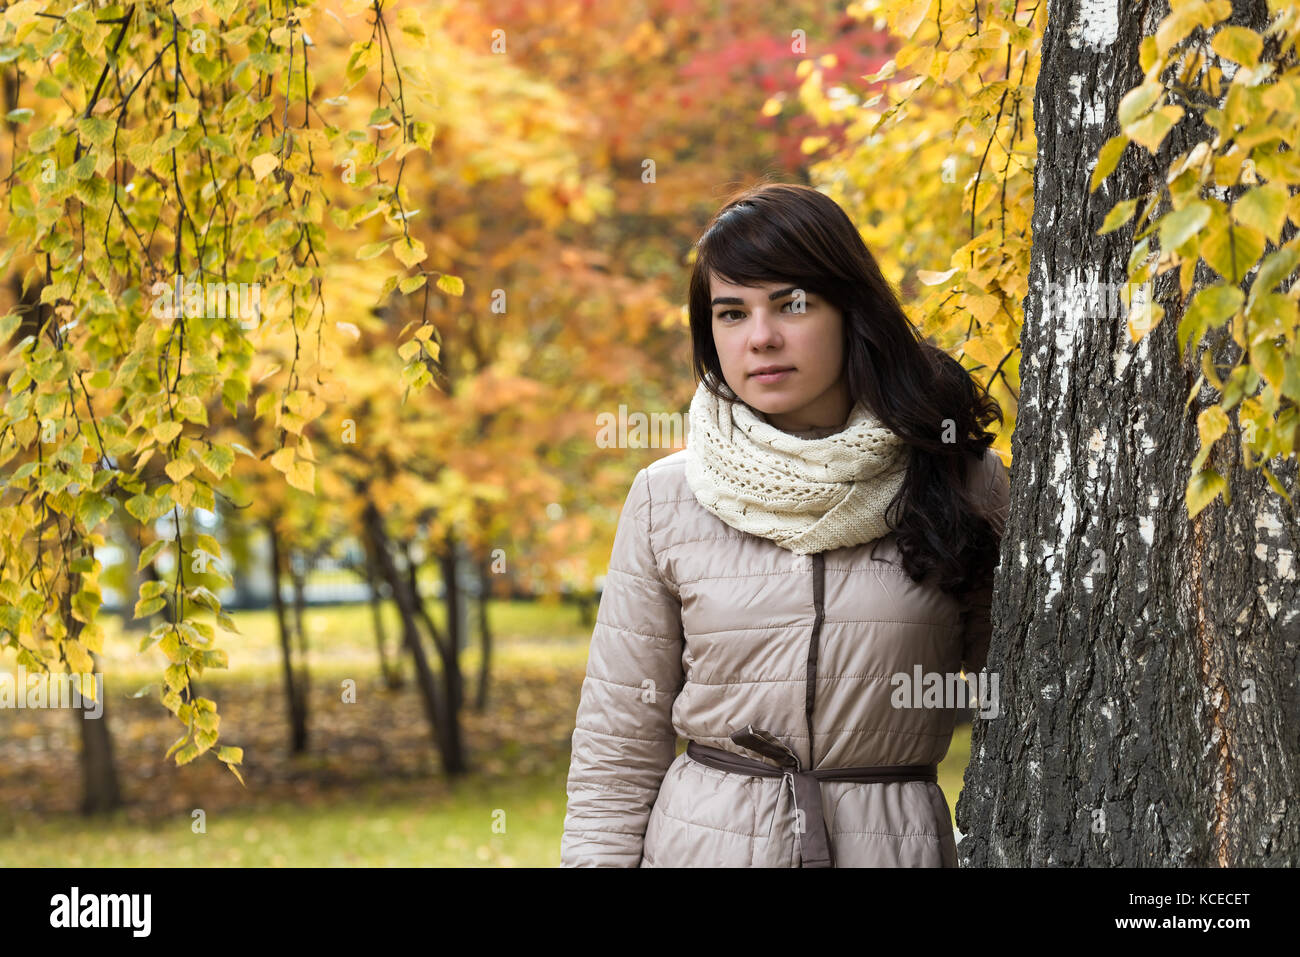 Mädchen mit dunklen lockigen Haar in der Nähe von einem Baum vor dem Hintergrund von Herbstlaub Stockfoto